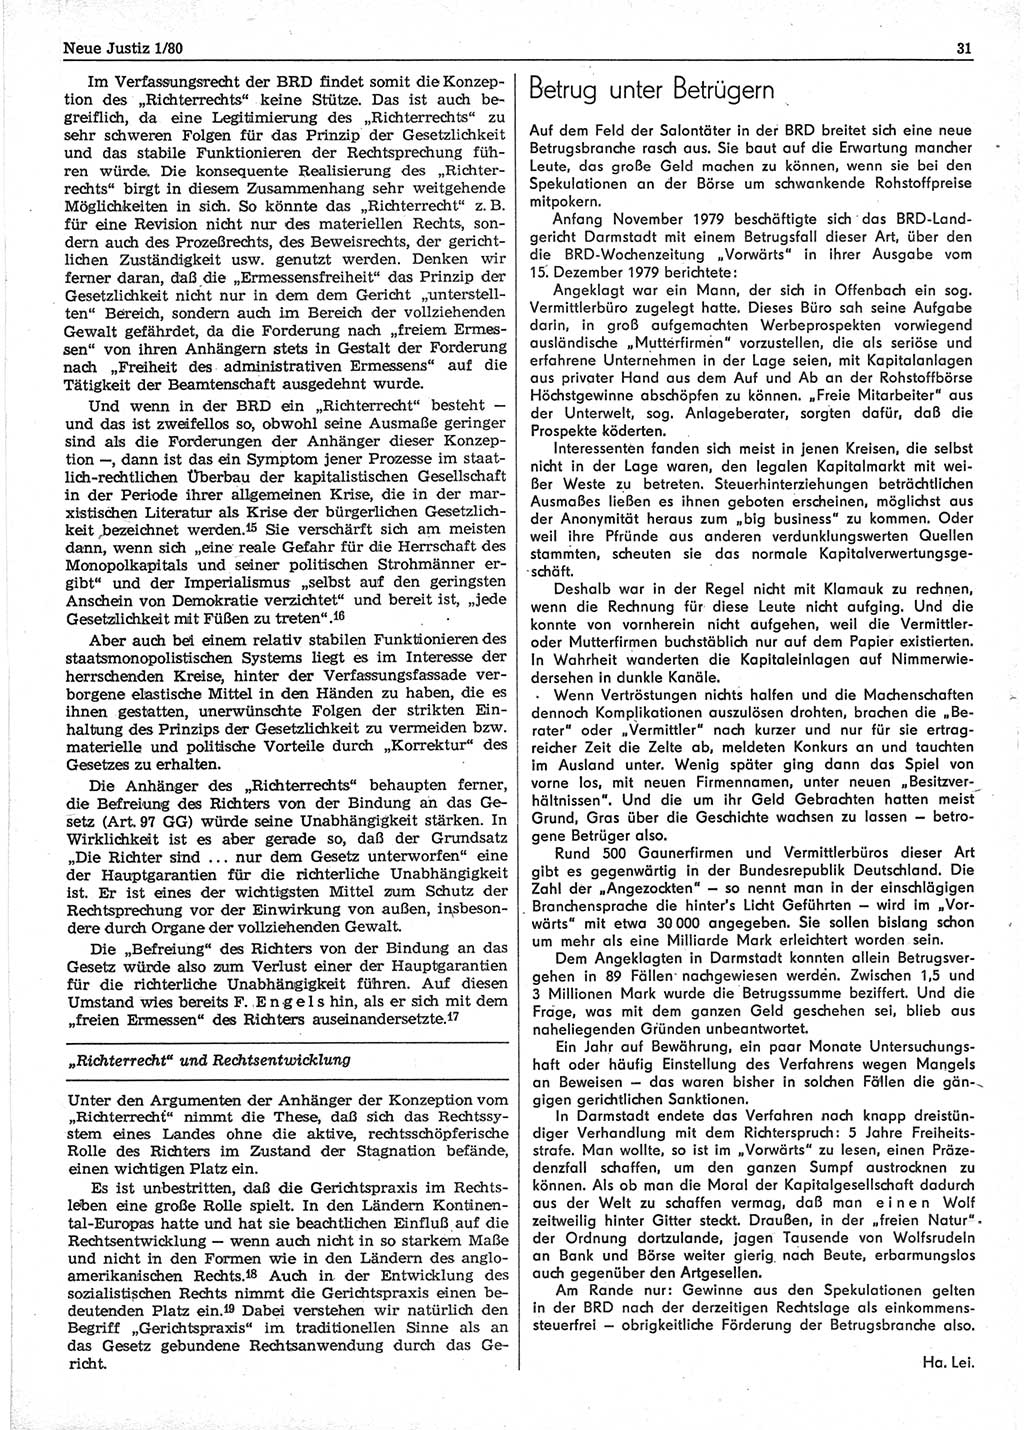 Neue Justiz (NJ), Zeitschrift für sozialistisches Recht und Gesetzlichkeit [Deutsche Demokratische Republik (DDR)], 34. Jahrgang 1980, Seite 31 (NJ DDR 1980, S. 31)